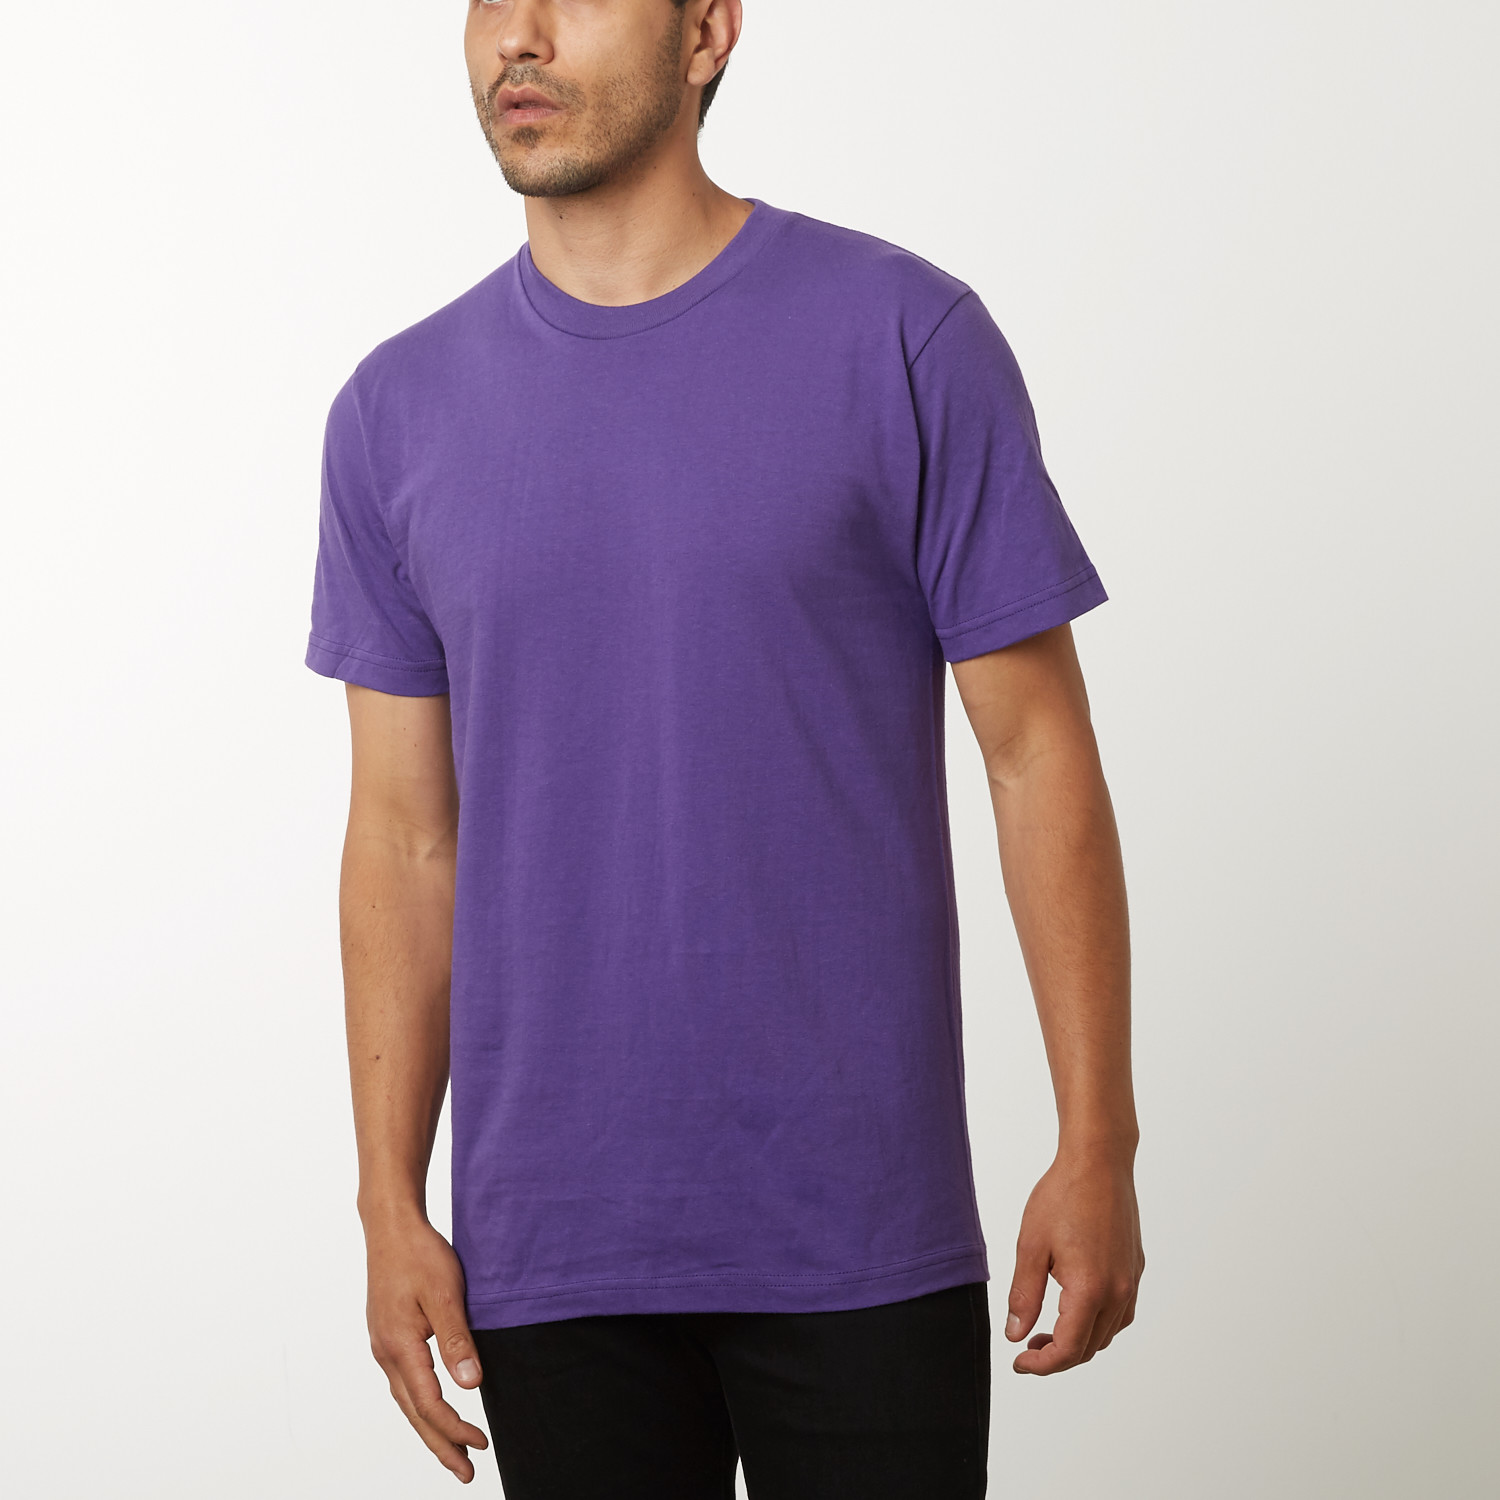 Blank Purple Tshirt | ubicaciondepersonas.cdmx.gob.mx